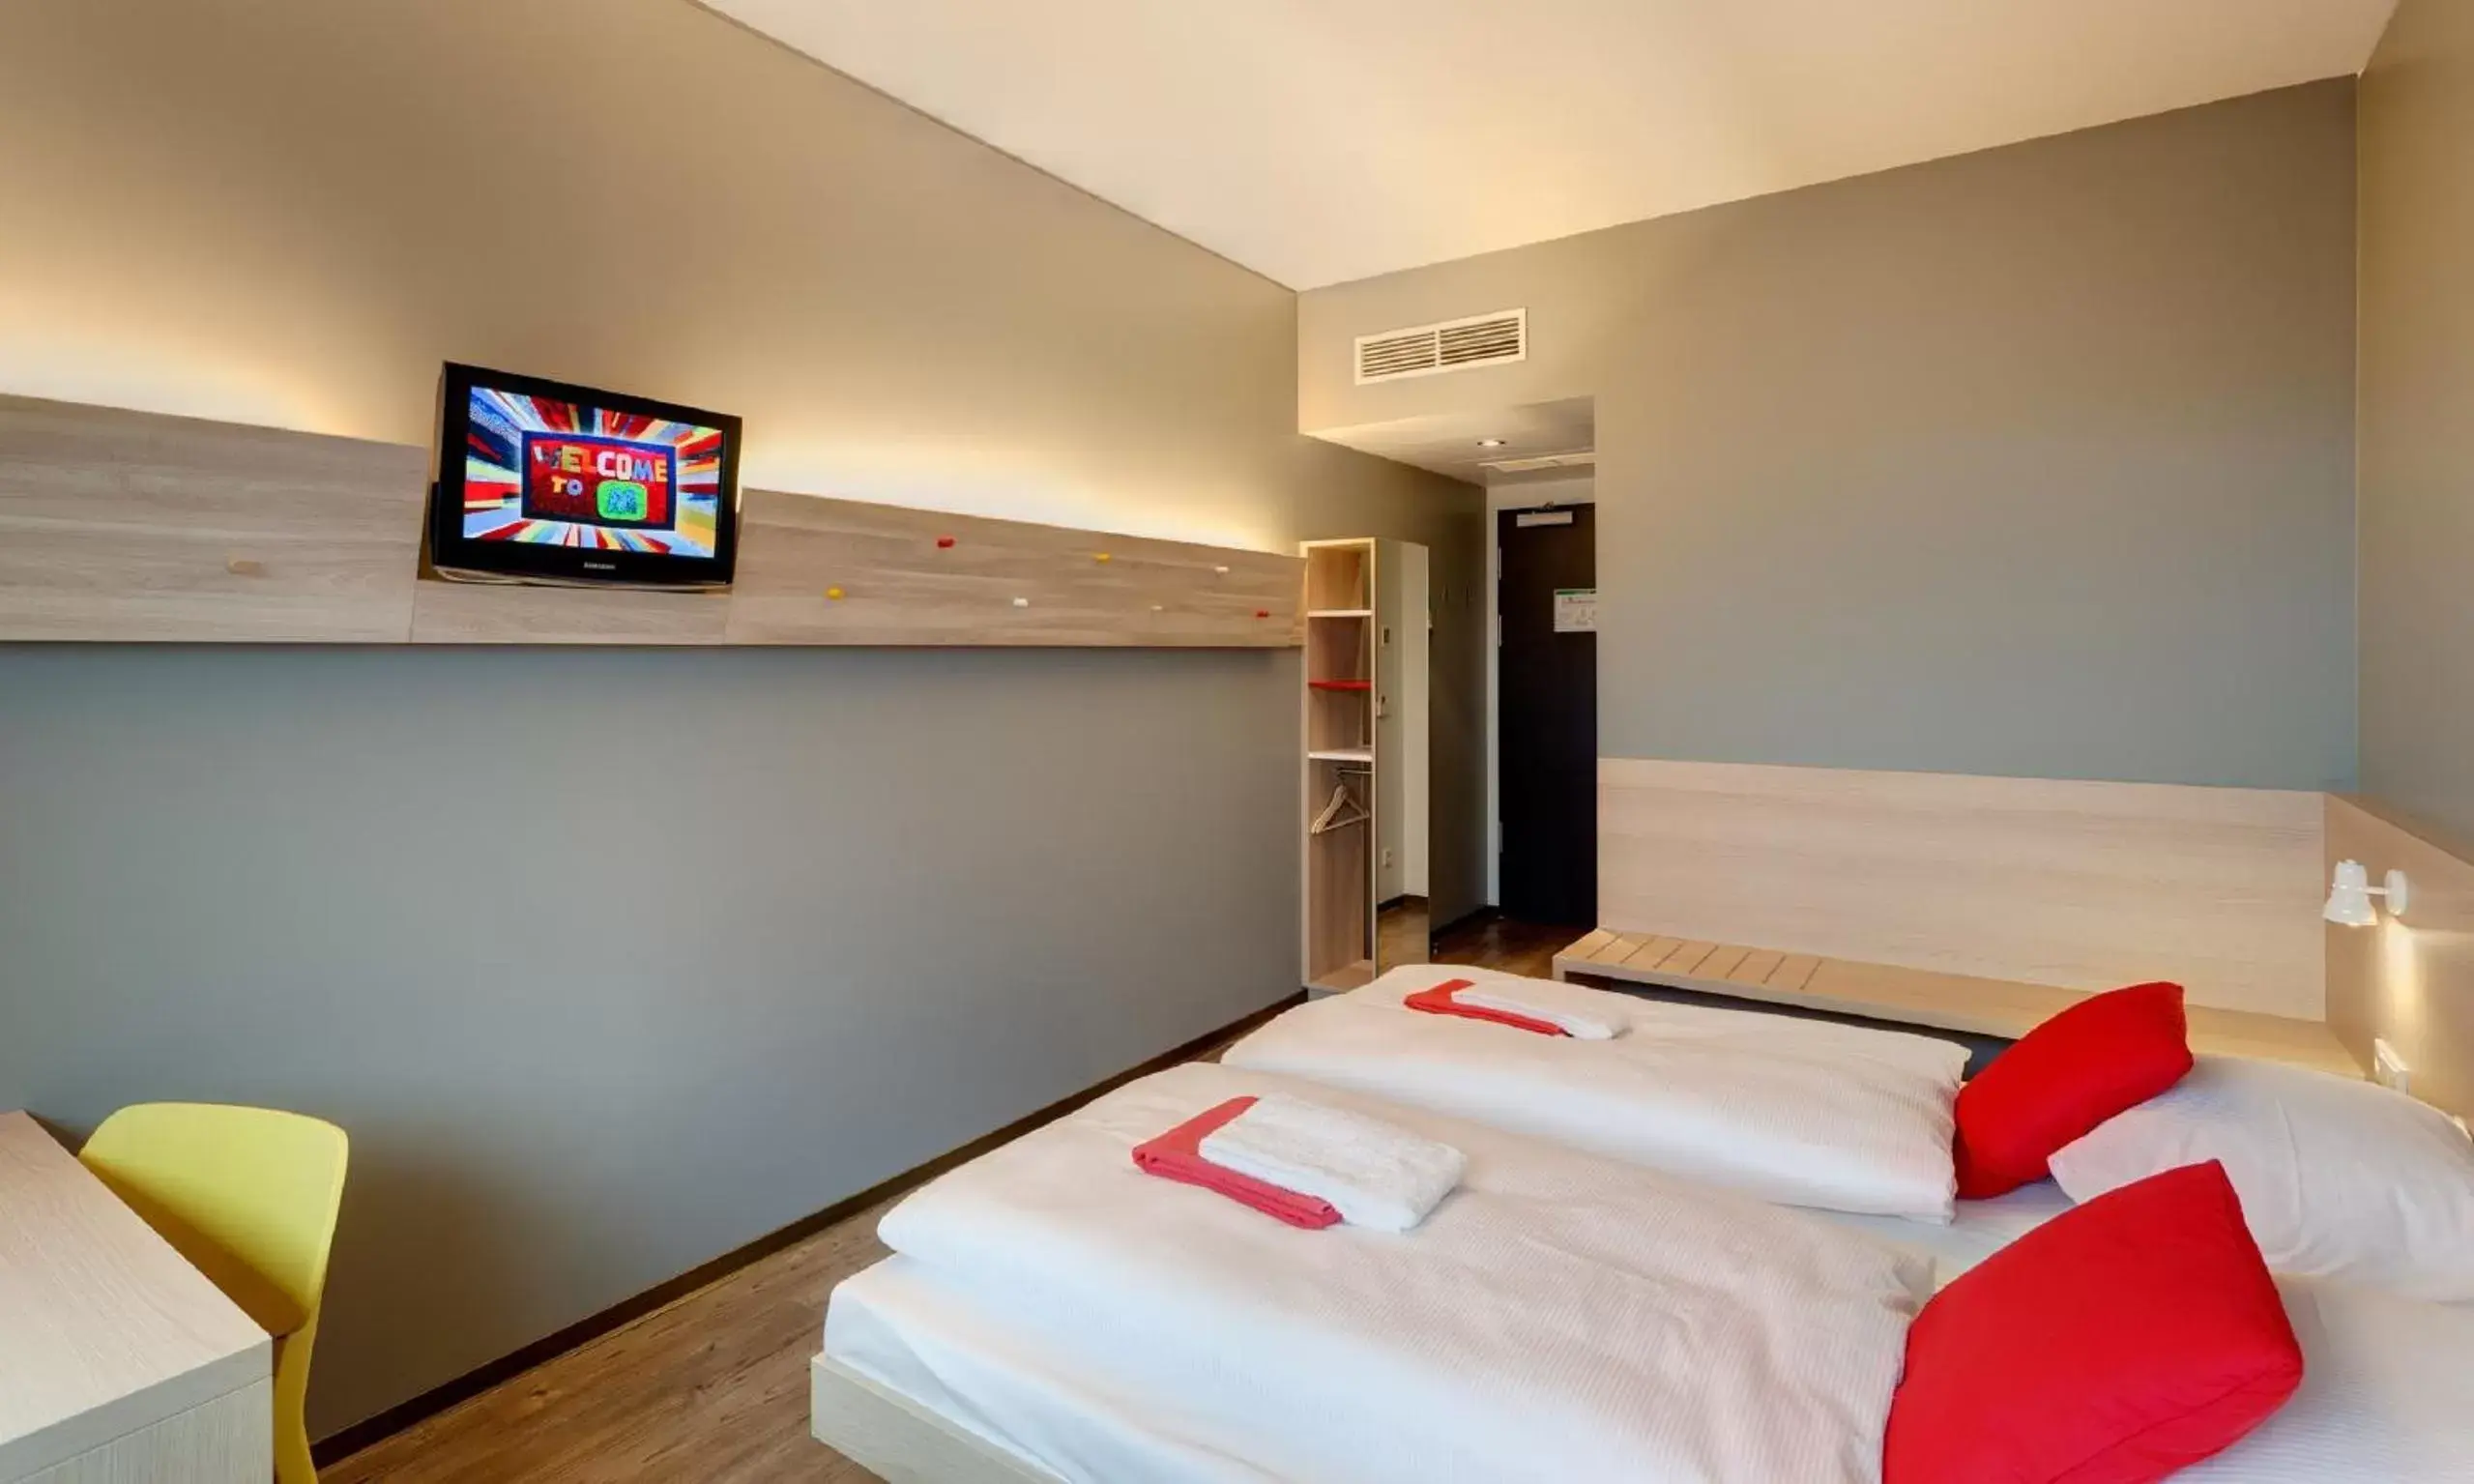 Bedroom, TV/Entertainment Center in MEININGER Hotel Berlin Airport